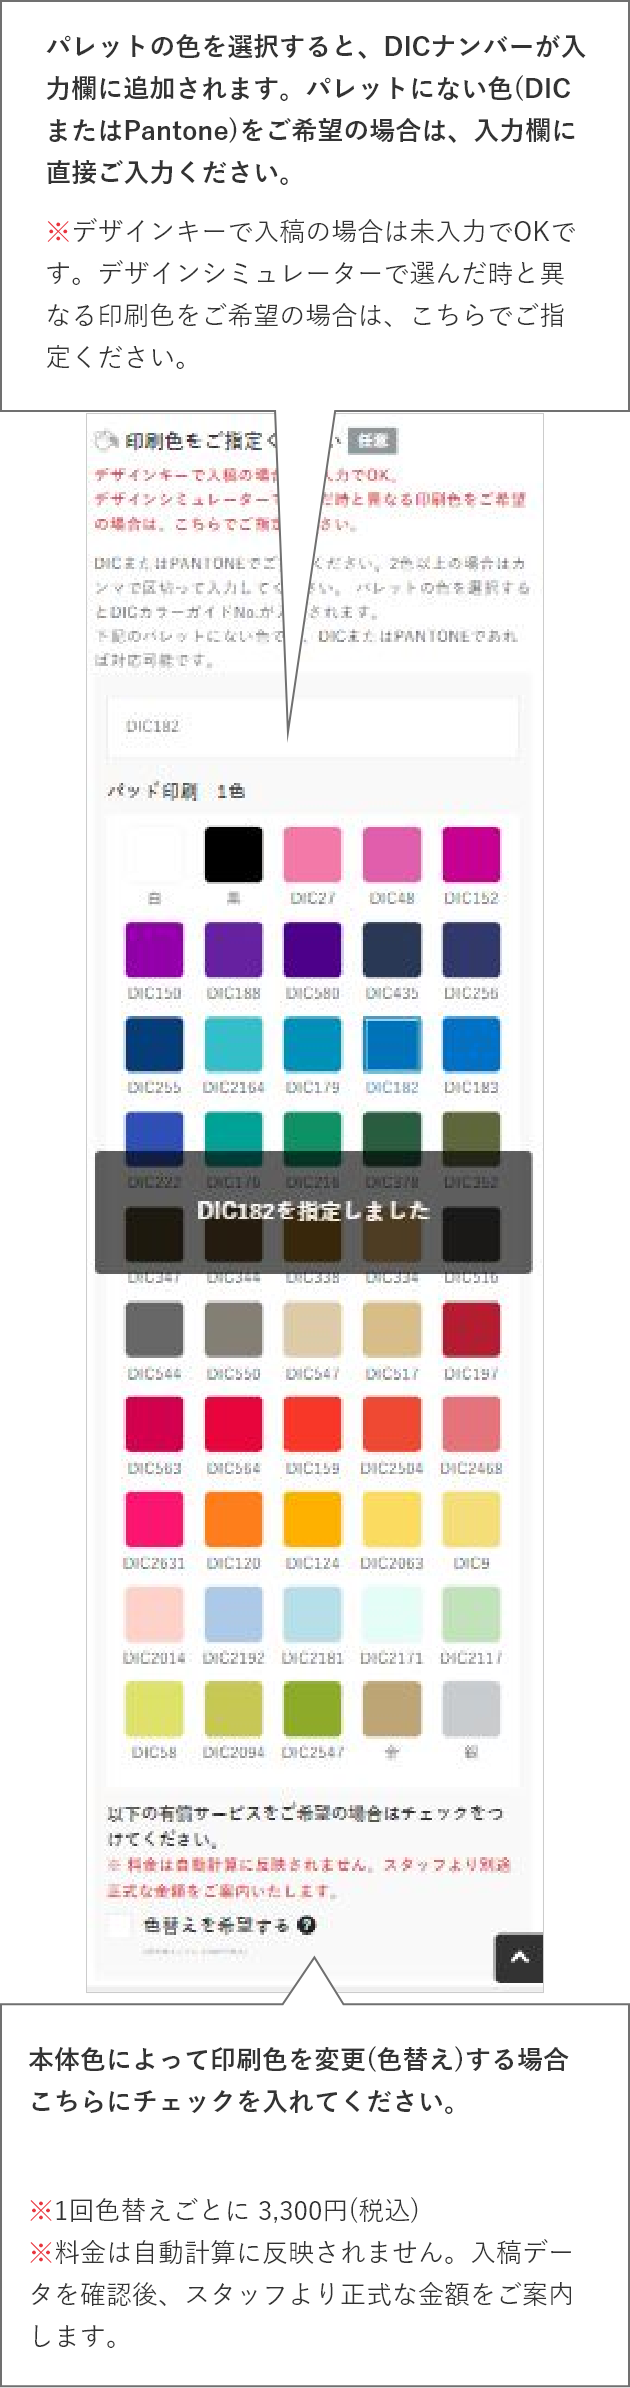 パレットの色を選択すると、DICナンバーが入力欄に追加されます。パレットにない色(DICまたはPantone)をご希望の場合は、入力欄に直接ご入力ください。※デザインキーで入稿の場合は未入力でOKです。デザインシミュレーターで選んだ時と異なる印刷色をご希望の場合は、こちらでご指定ください。色替えをご希望の場合はこちらにチェックを入れてください。※1回色替えごとに 3,300円(税込)
    ※料金は自動計算に反映されません。入稿データを確認後、スタッフより正式な金額をご案内します。